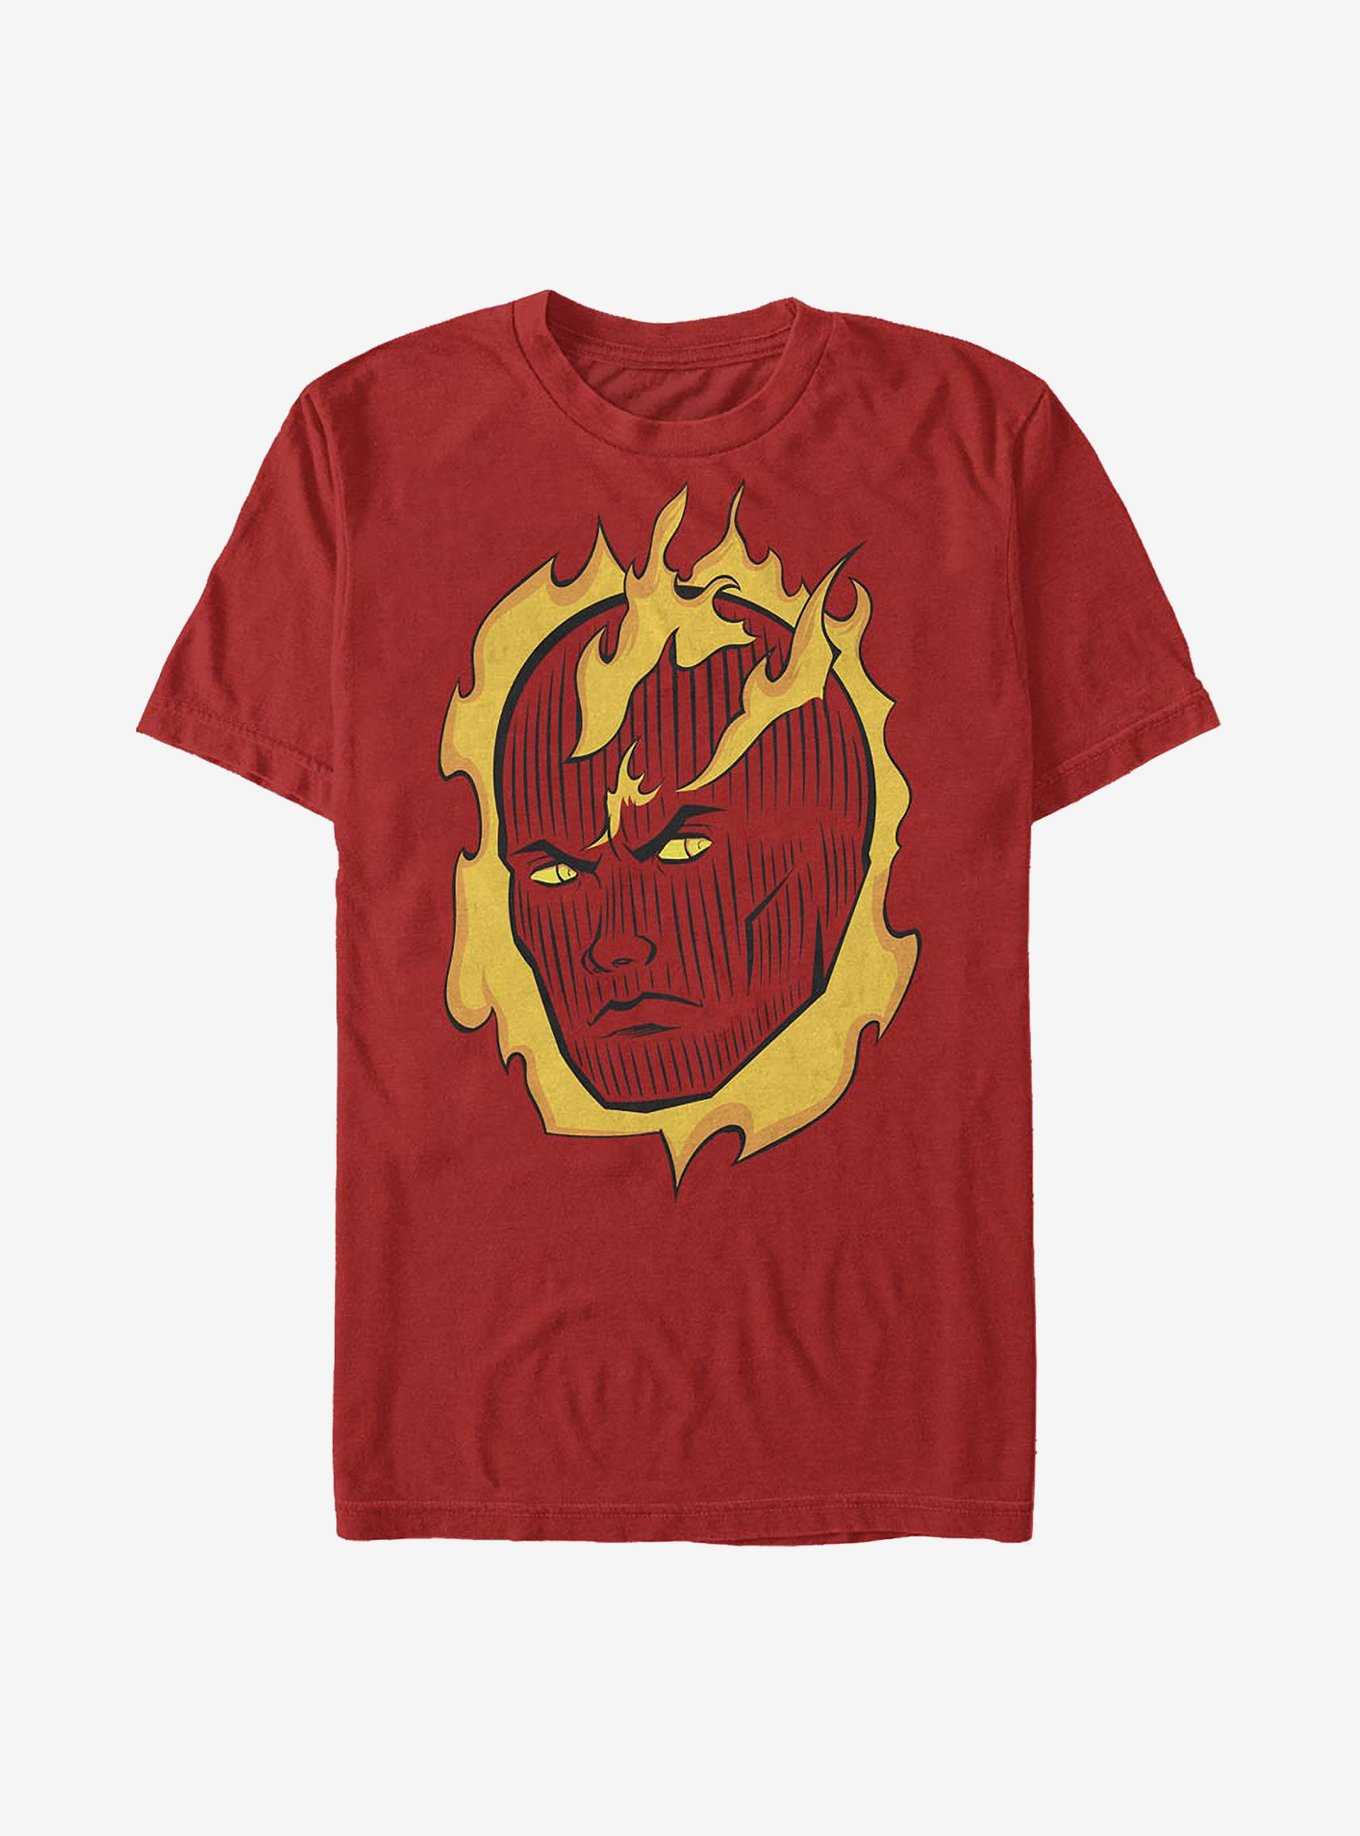 Marvel Fantastic Four Torch Shoulder T-Shirt, , hi-res